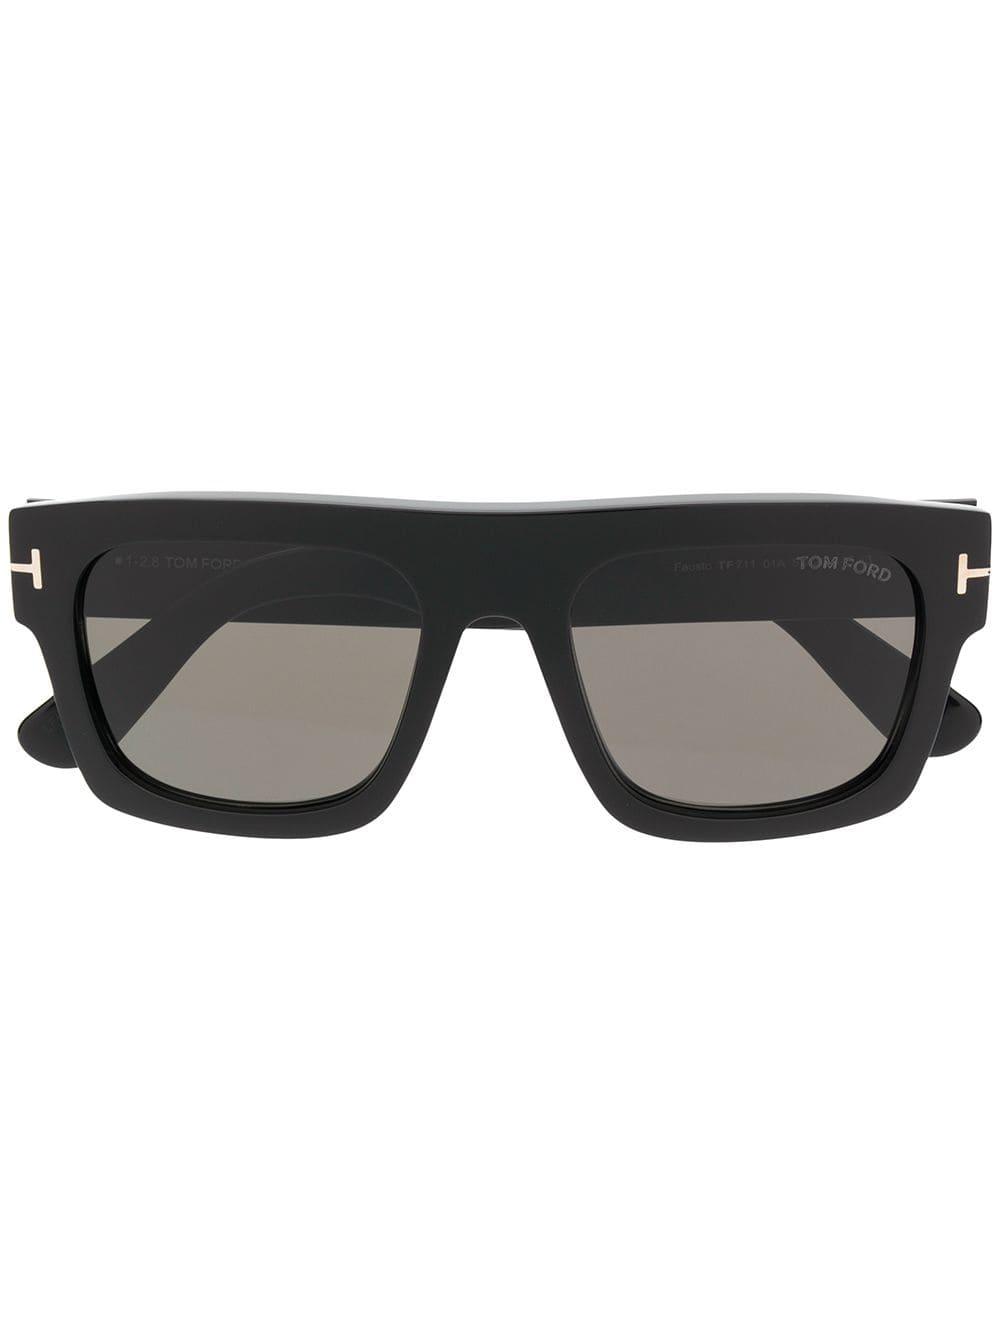 Tom Ford Fausto Sunglasses in Black for Men - Lyst